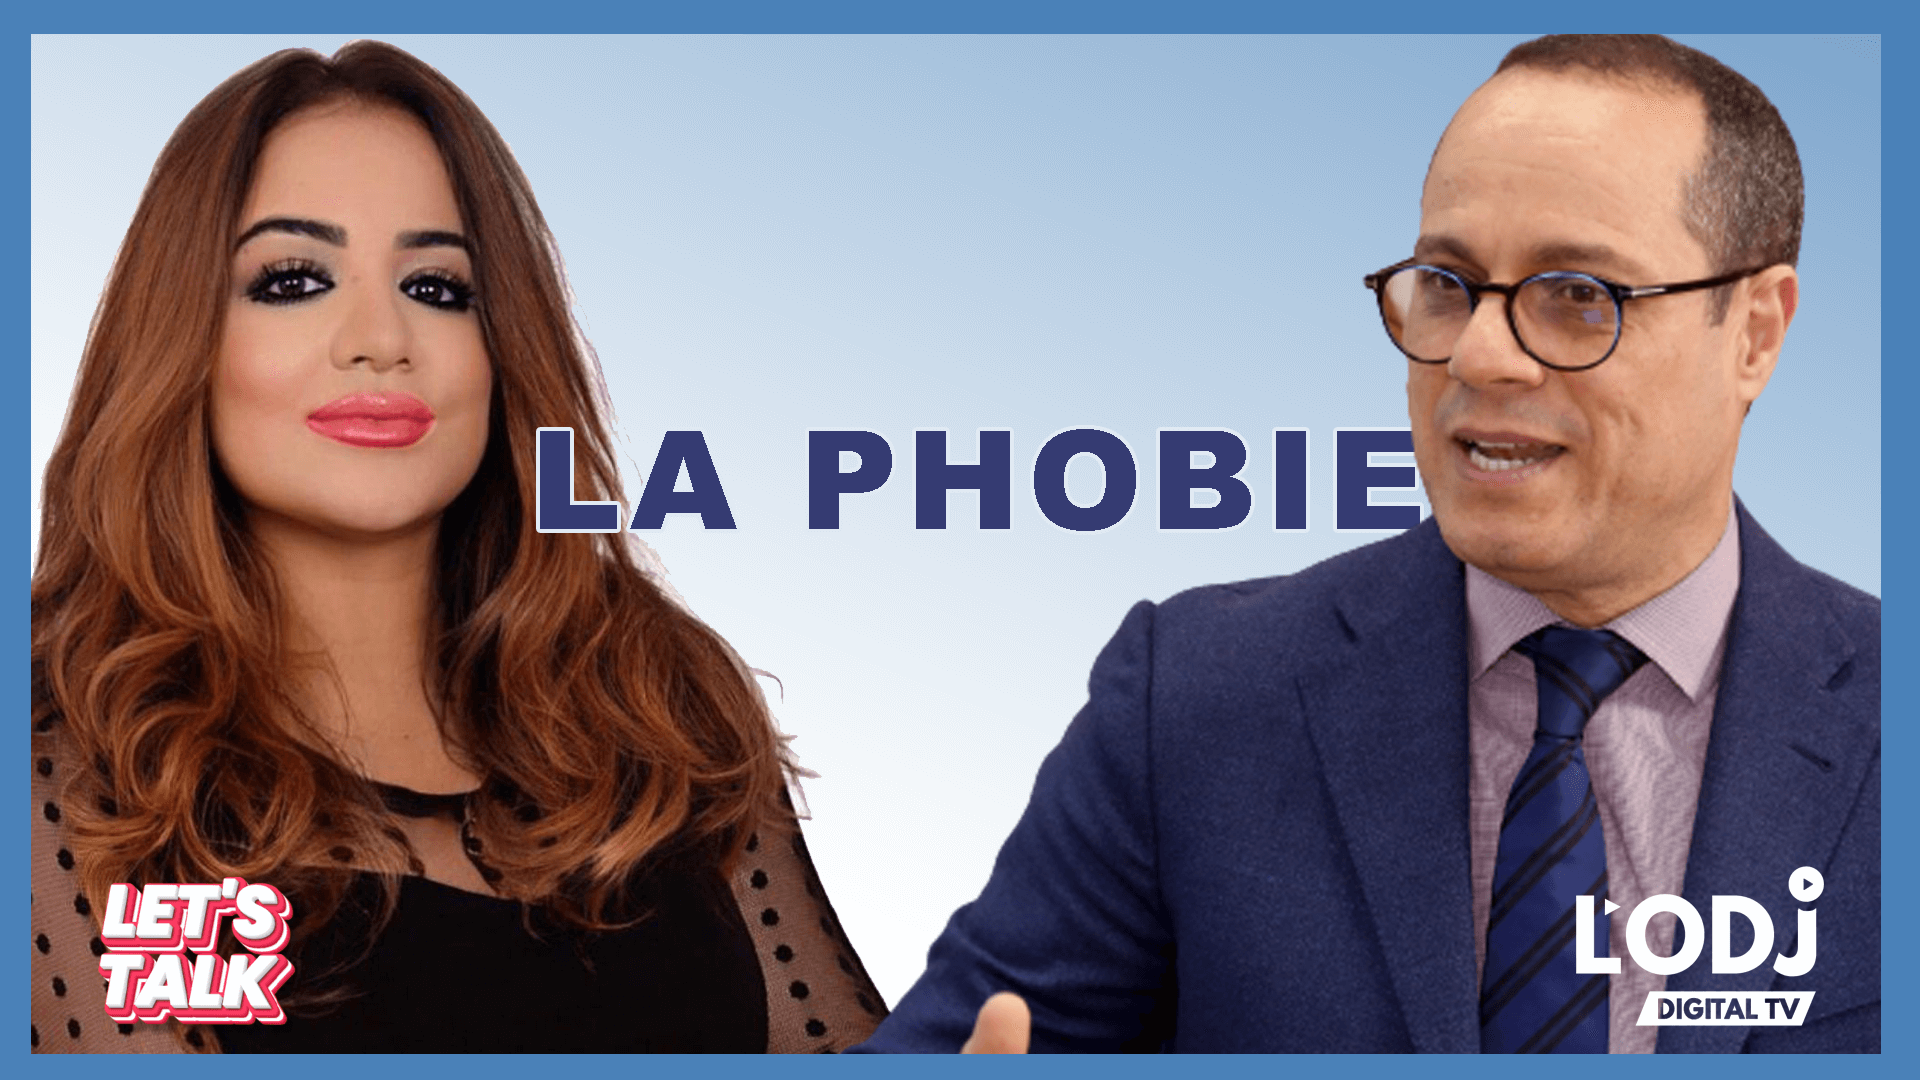 Let's Talk reçoit Pr. Jalal Taoufiq au sujet de la phobie